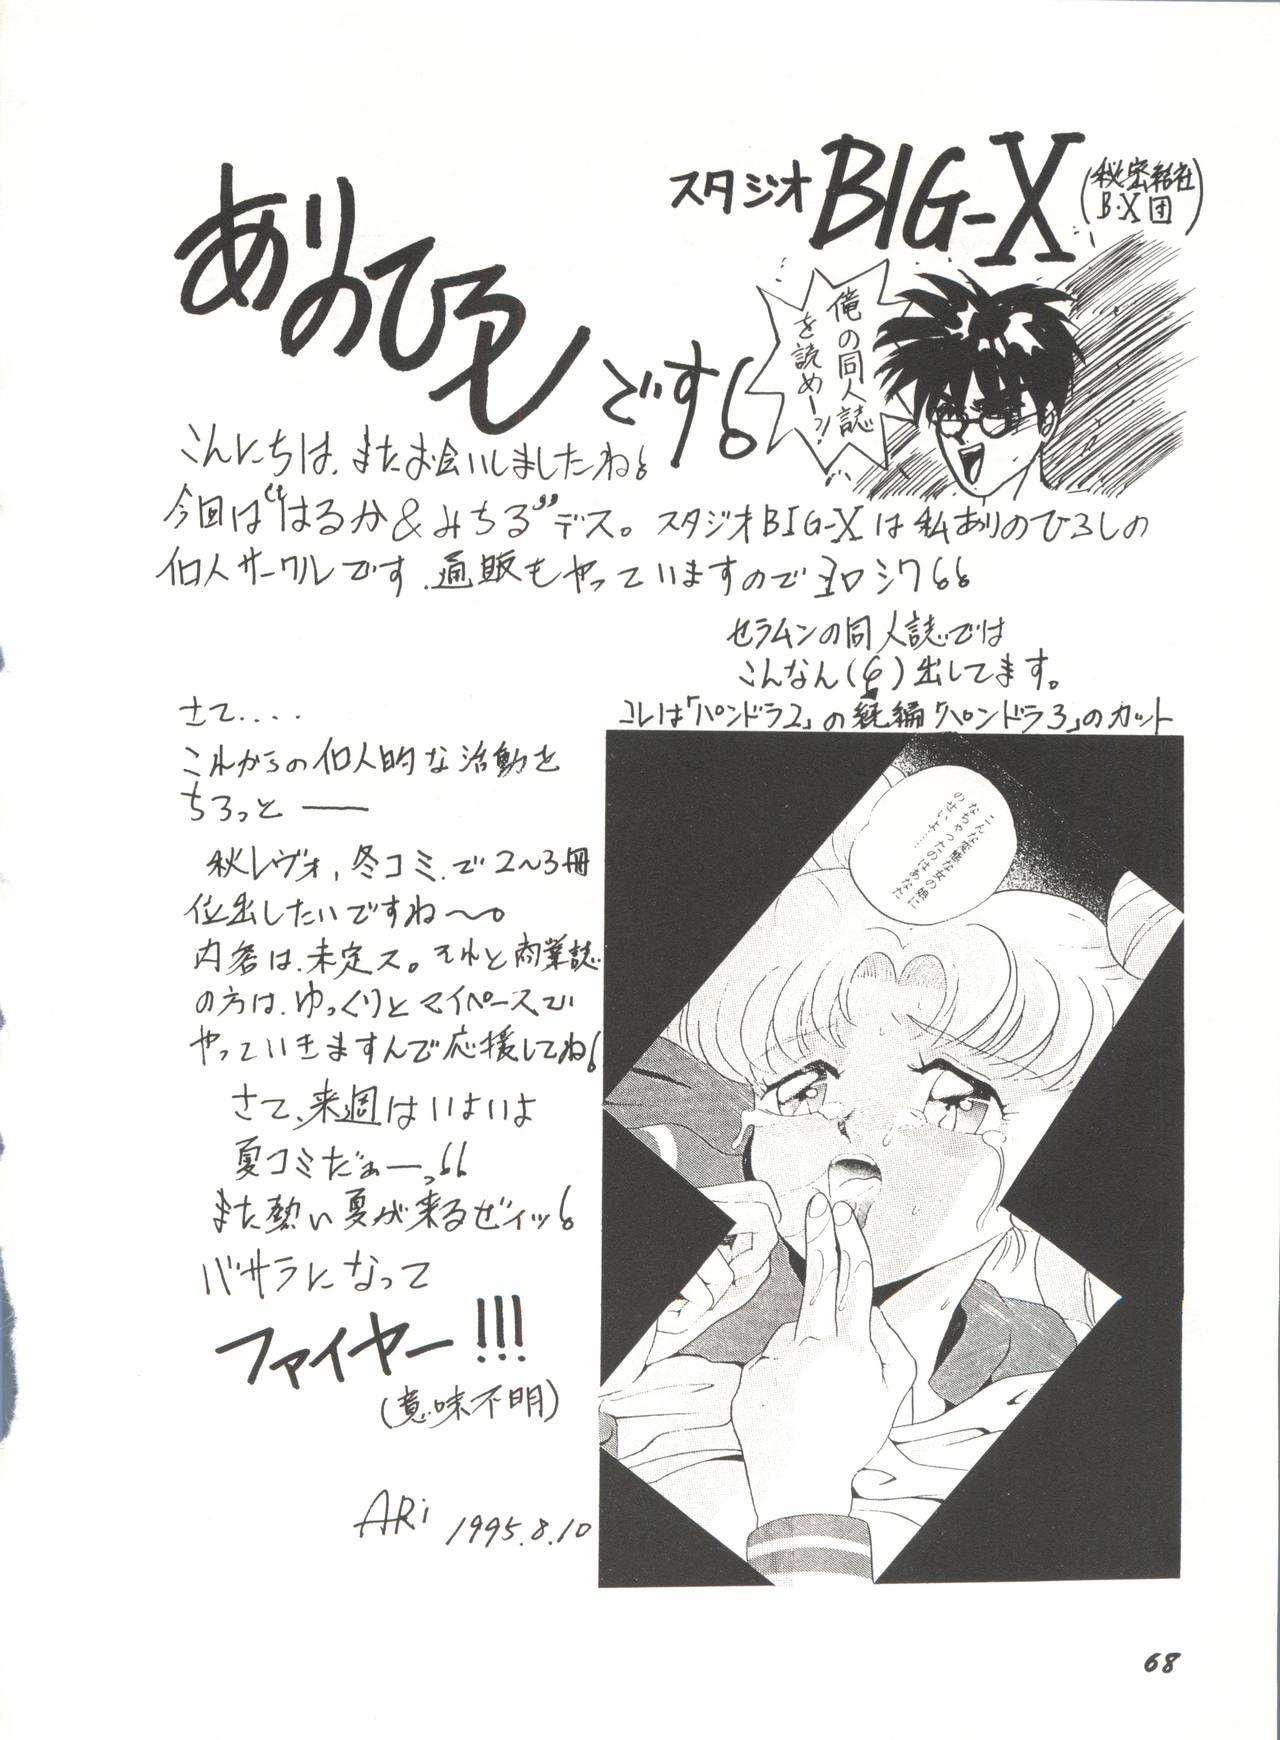 Bishoujo Doujinshi Anthology 16 - Moon Paradise 10 Tsuki no Rakuen 72